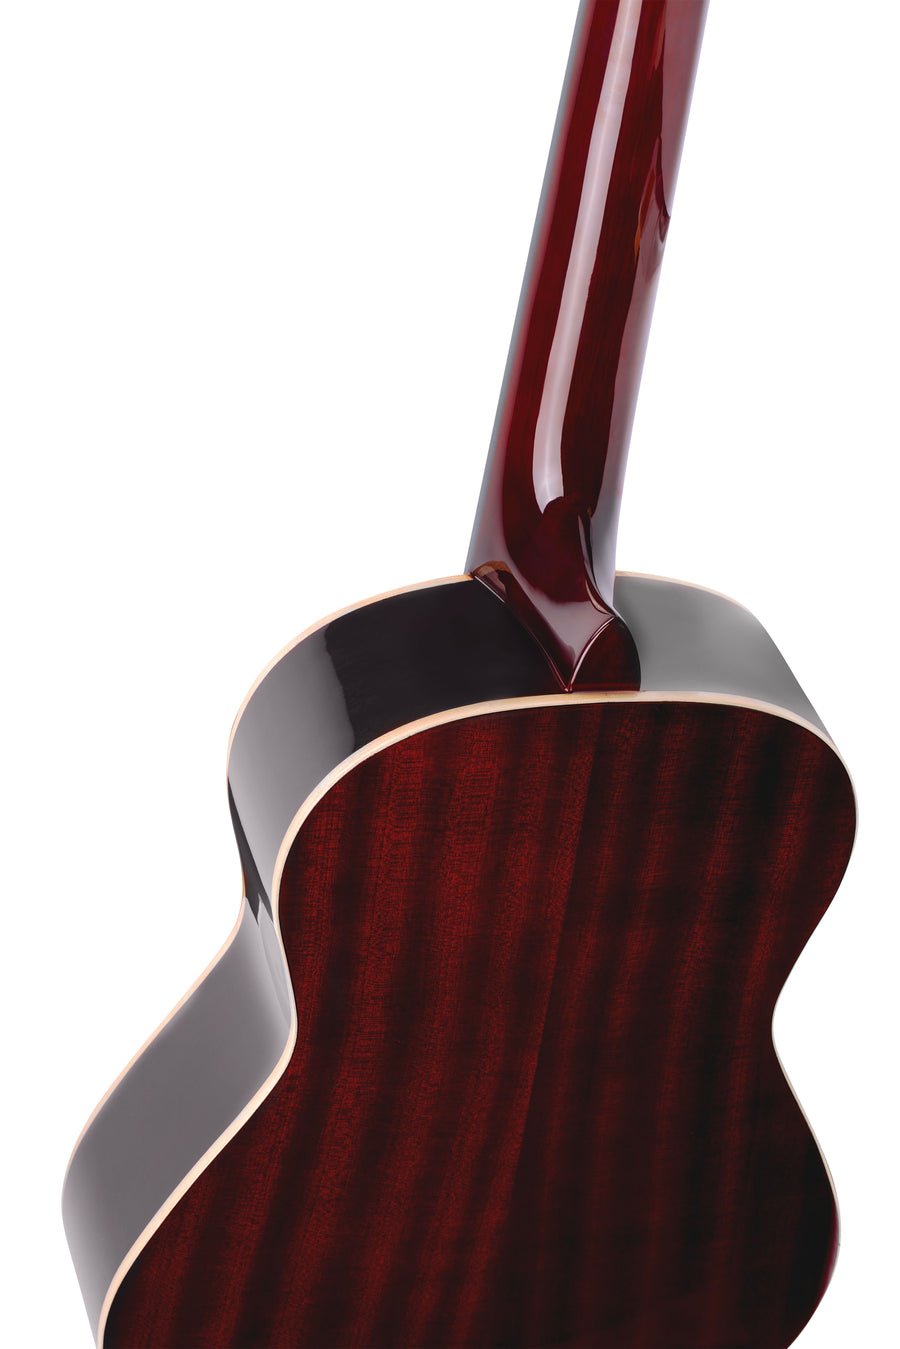 Ortega R121-1/2WR Classical Guitar - [ka(:)rısma] showroom & concept store